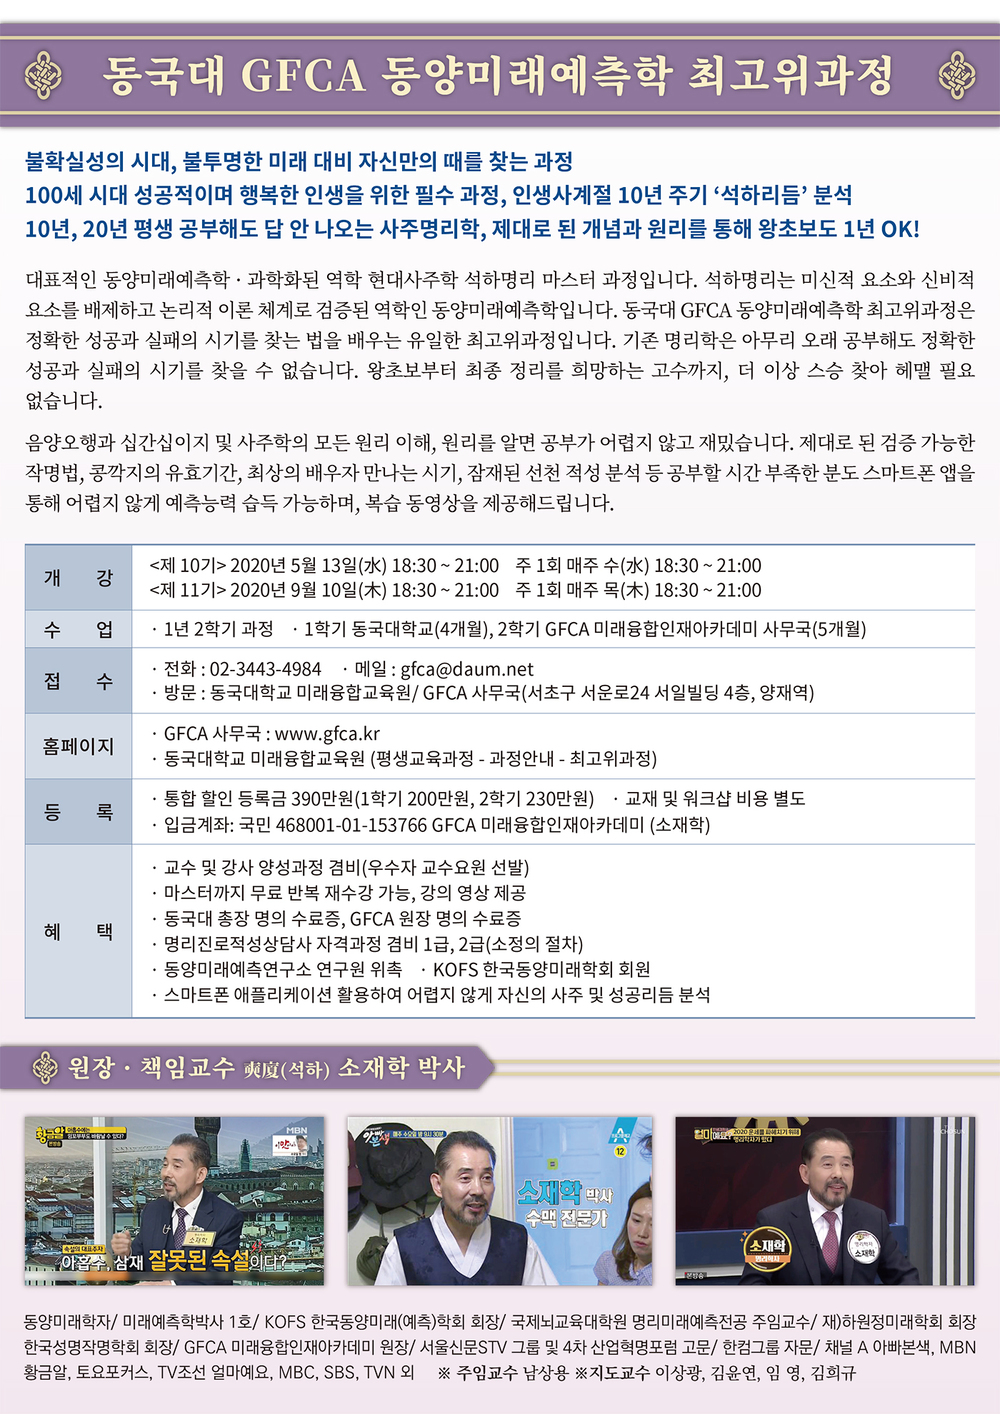 GFCA 동양미래예측학최고위과정